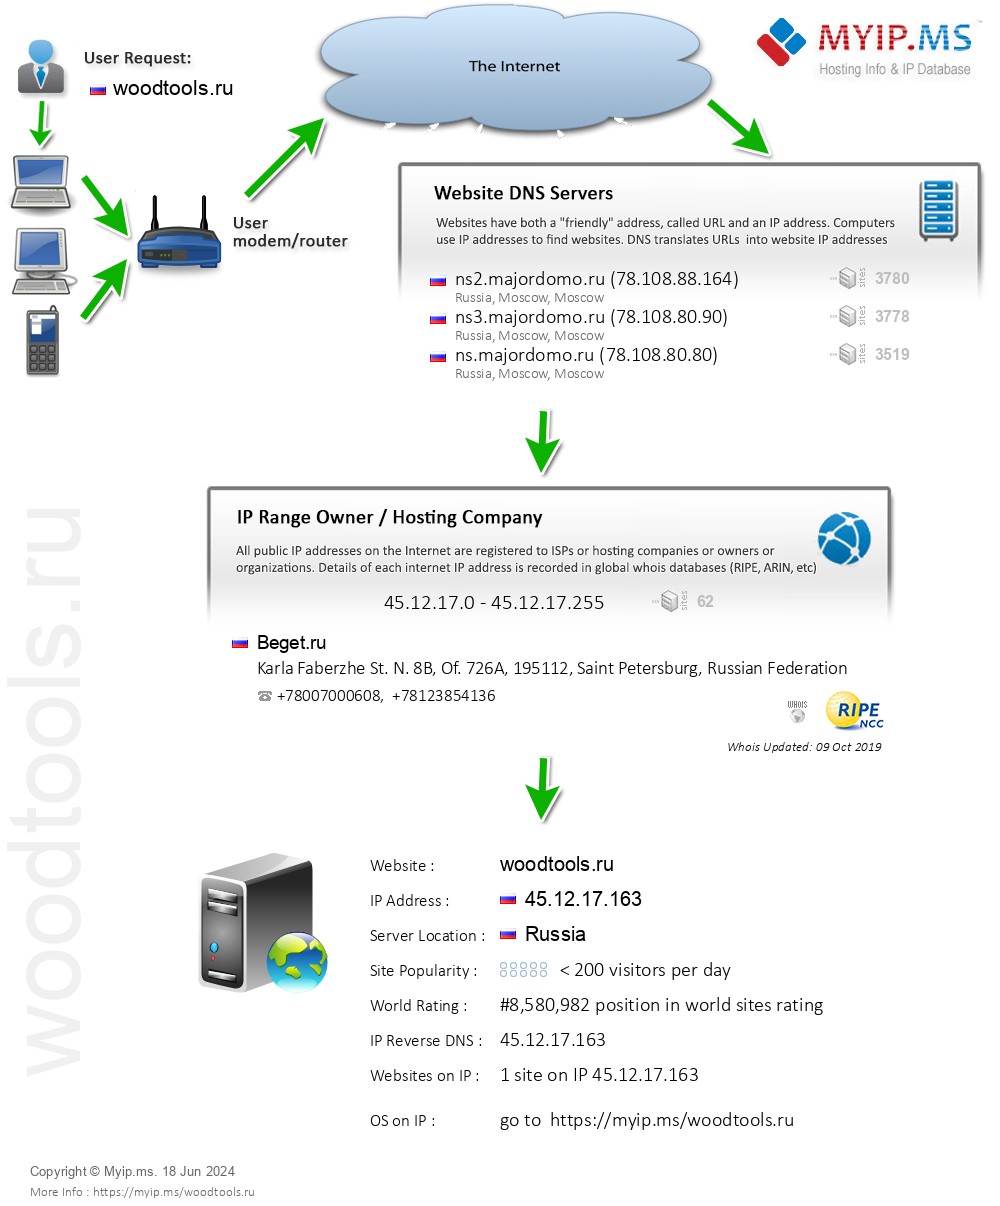 Woodtools.ru - Website Hosting Visual IP Diagram